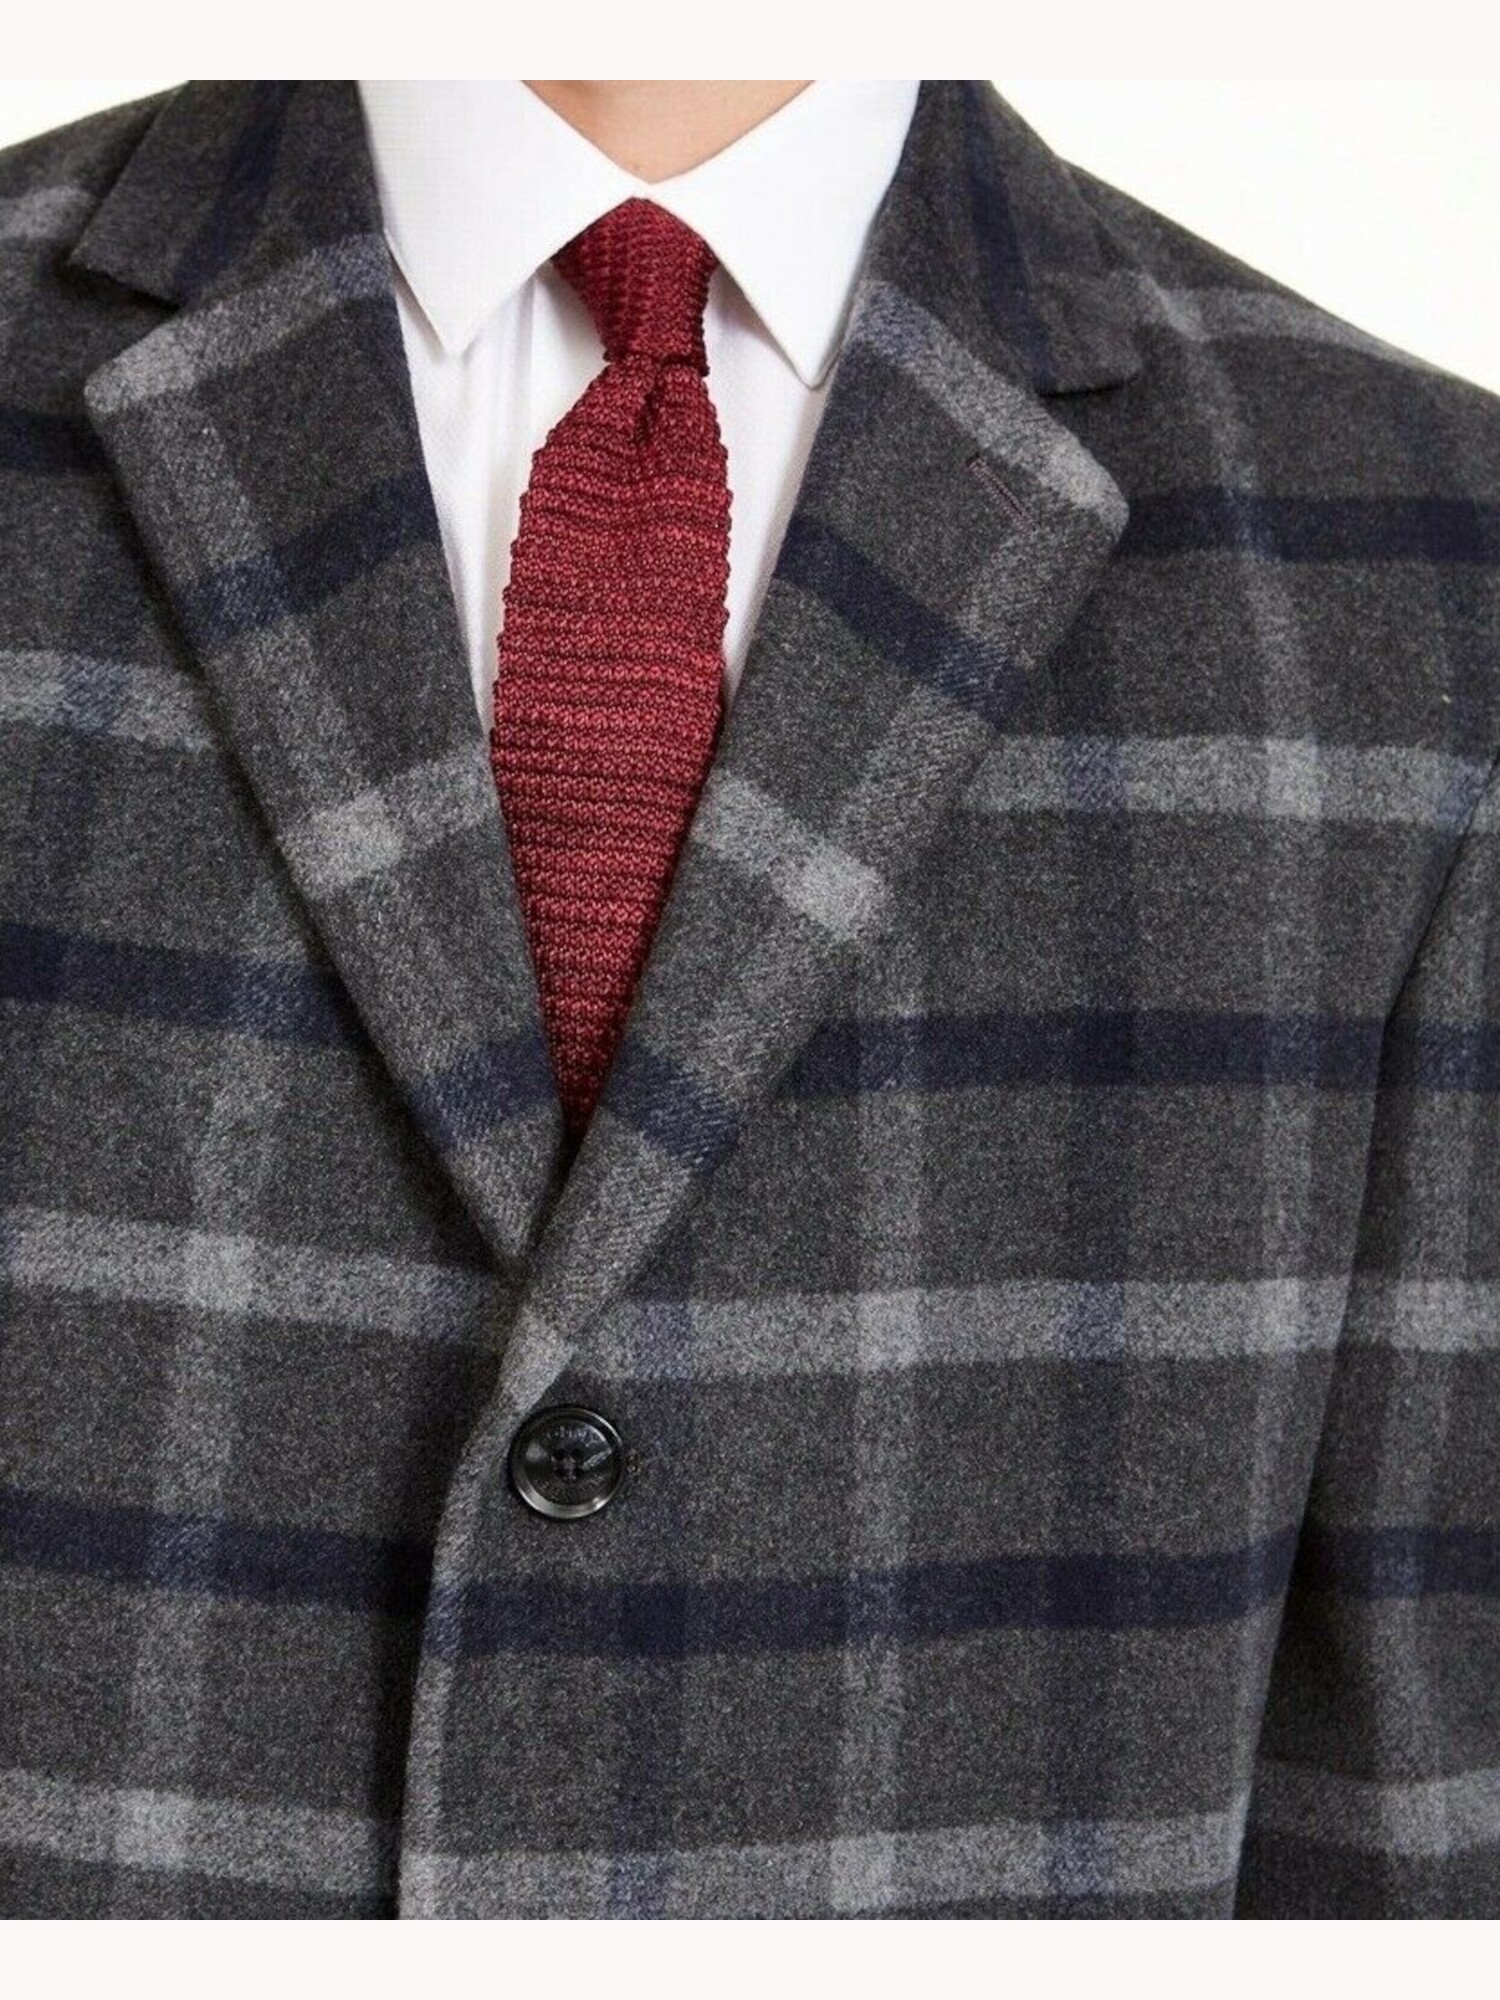 Tommy Hilfiger Mens Addison Wool Blend Modern Fit Top Coat - image 3 of 3